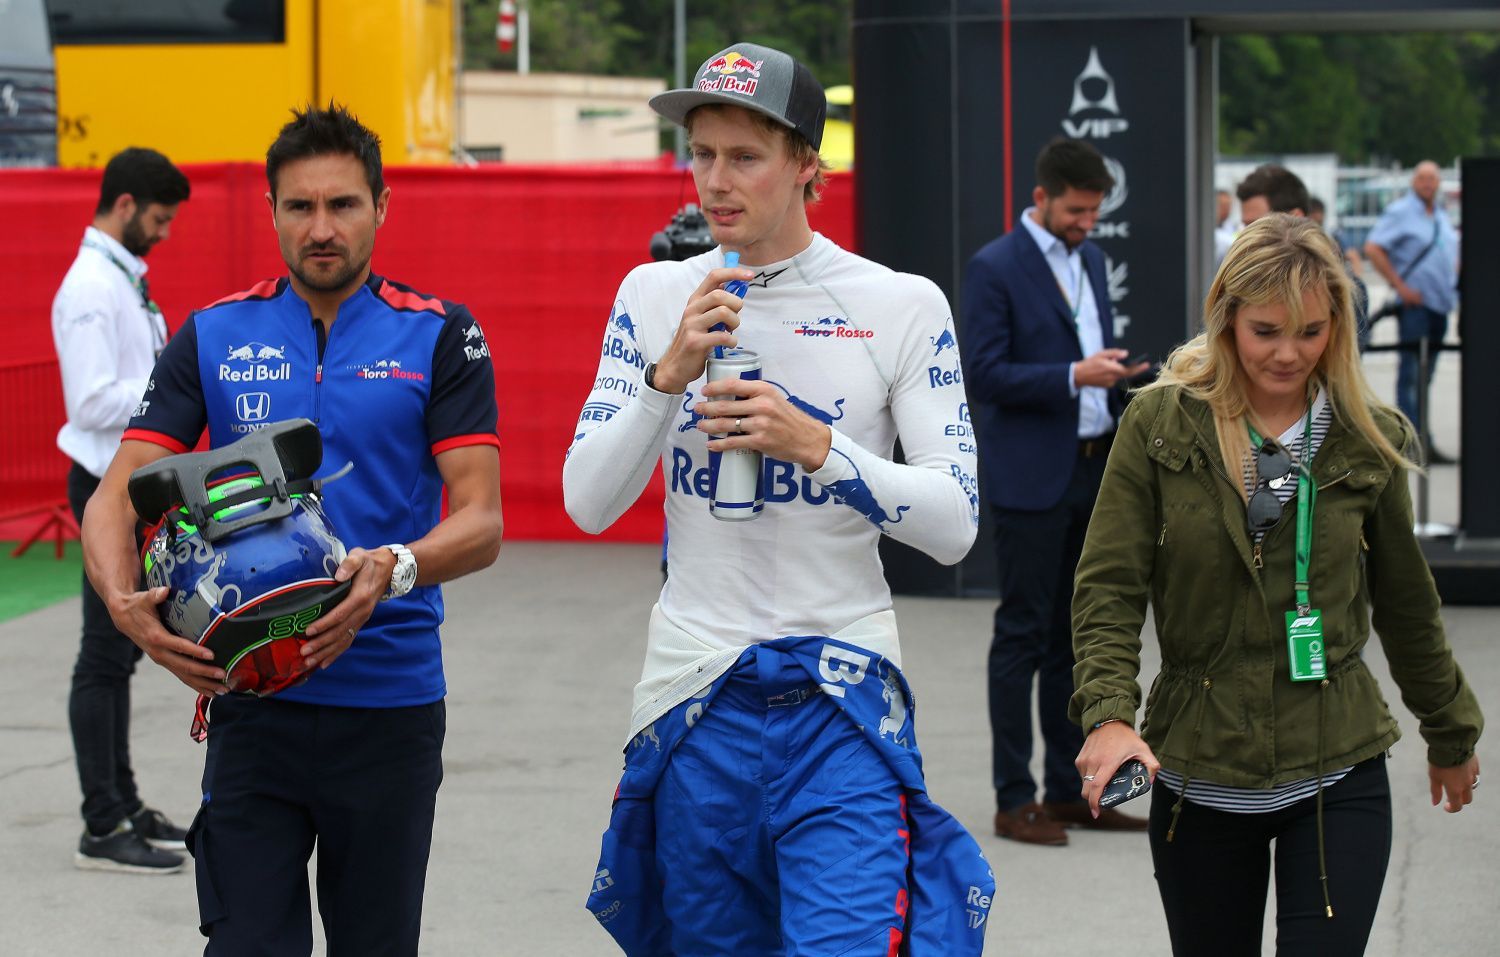 F1, VC Španělska 2018: Brendon Hartley, Toro Rosso